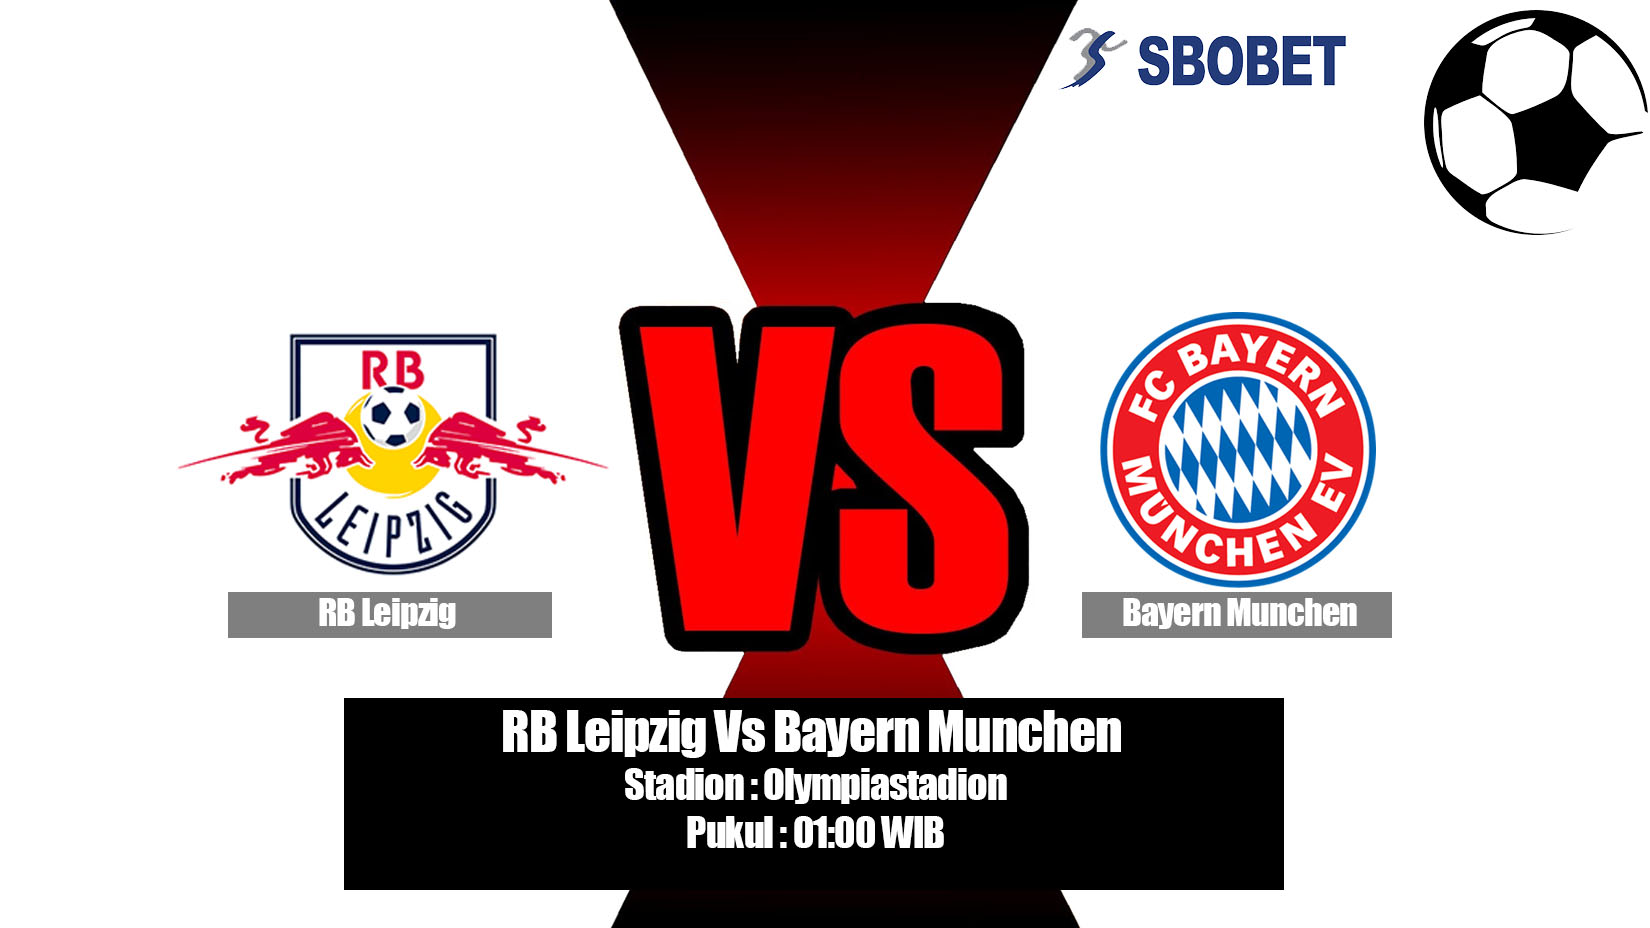 Prediksi Bola RB Leipzig Vs Bayern Munchen 26 Mei 2019